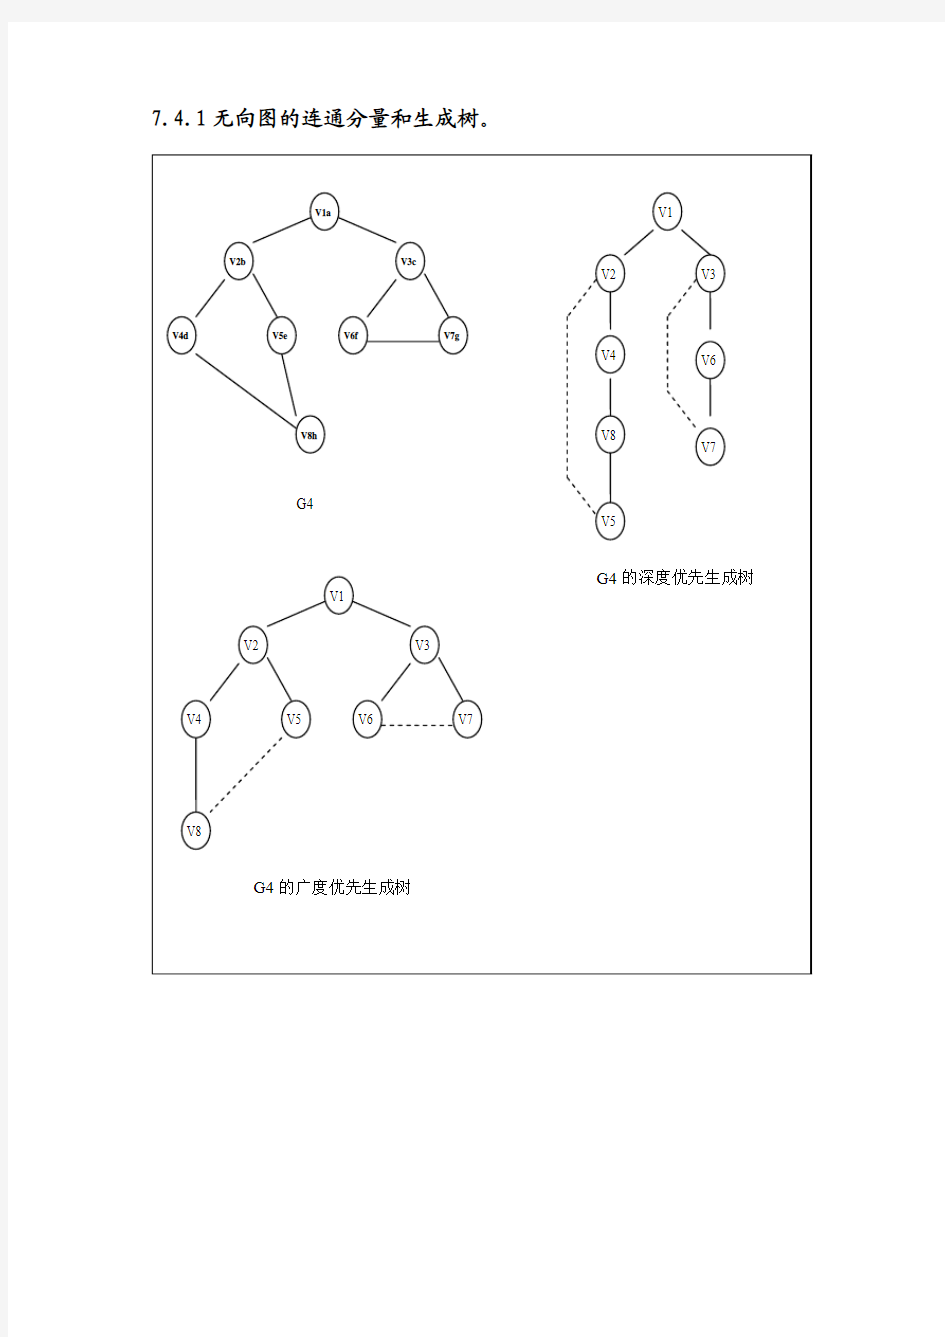 7.4.1无向图的连通分量和生成树